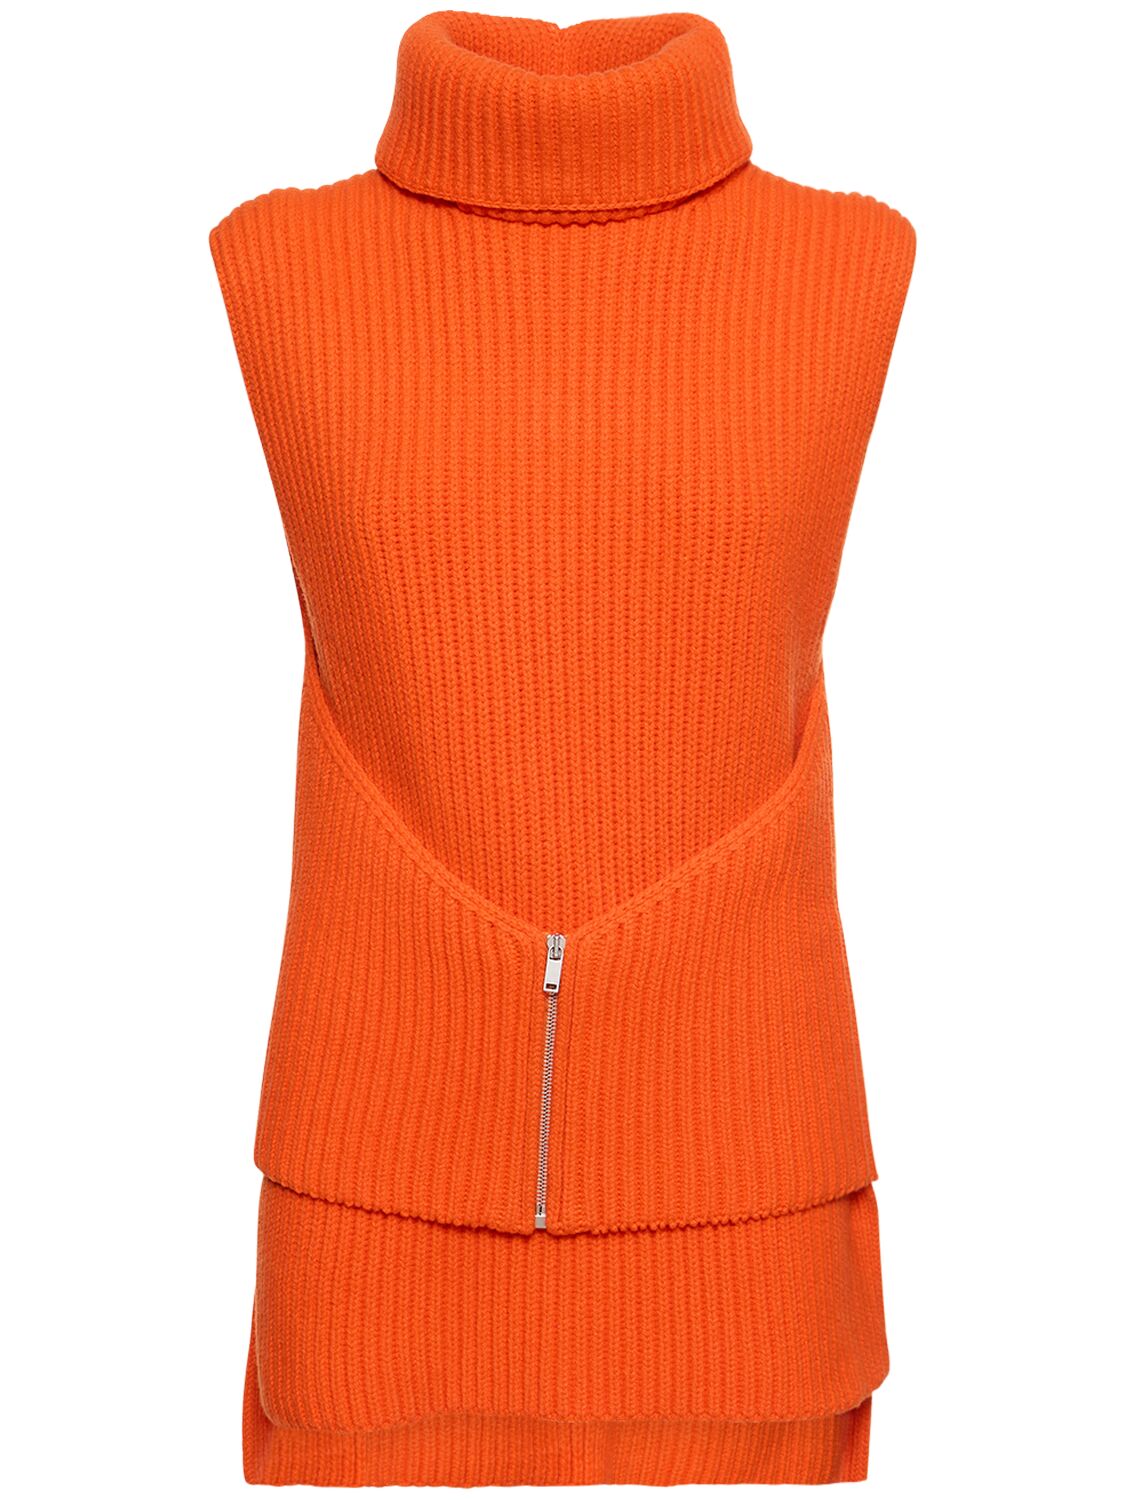 Jil Sander Knit Wool Waistcoat W/ Zip Detail In Orange